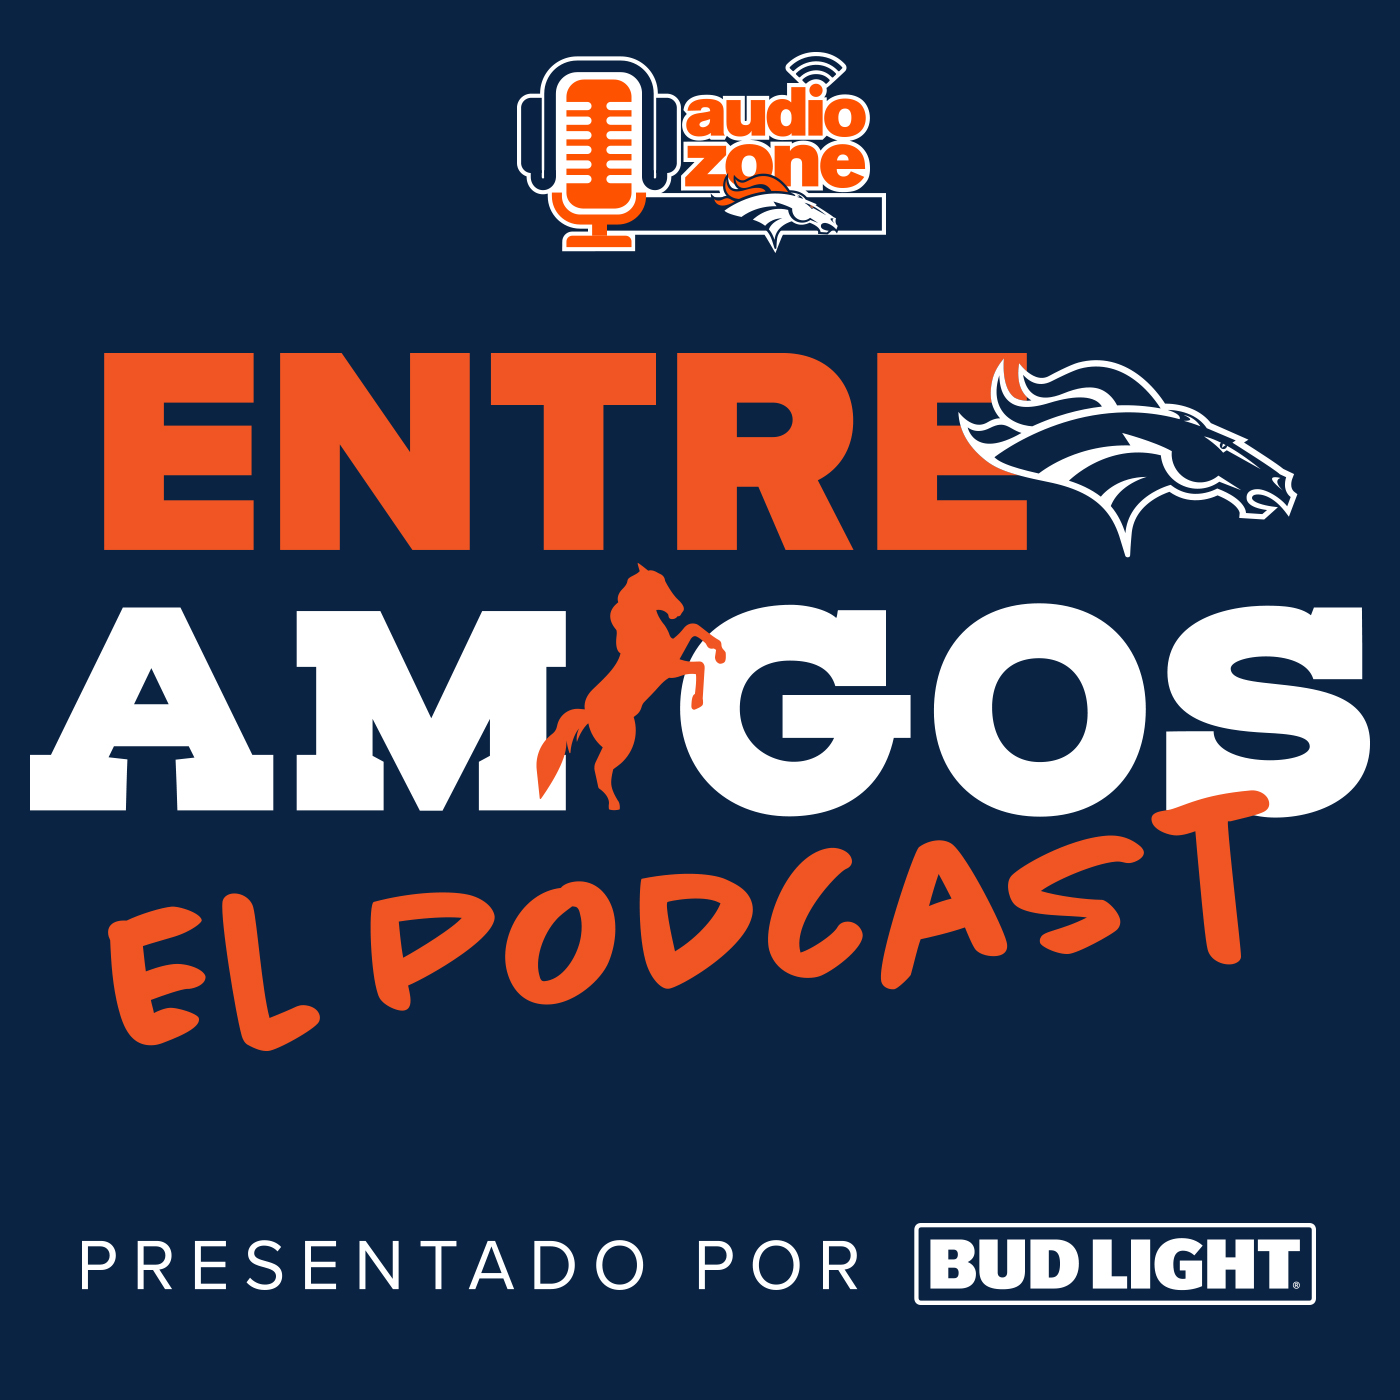 Resumen del Draft de la NFL de los Denver Broncos presentado por Bud Light